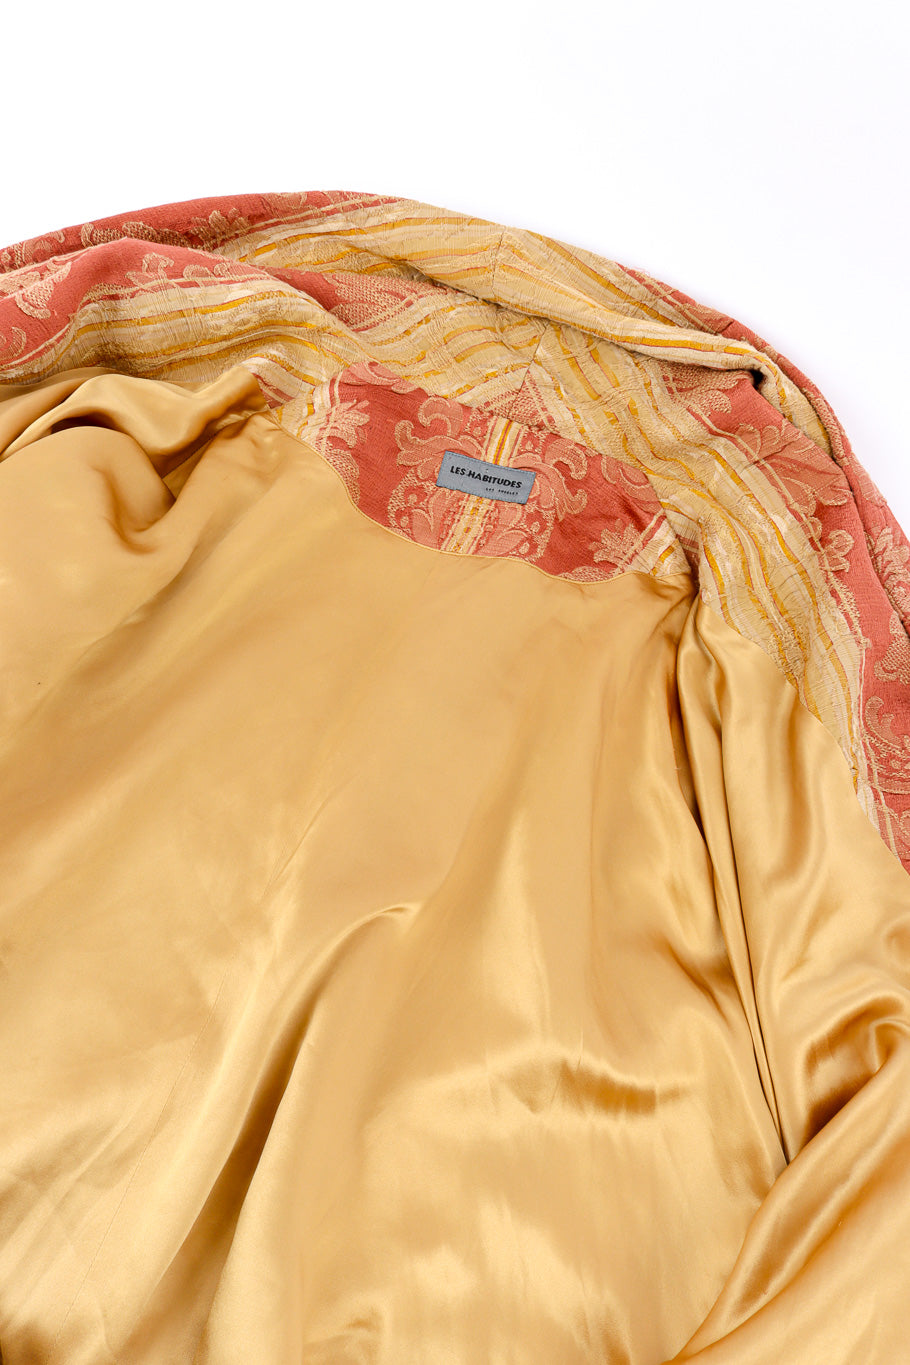 Vintage Les Habitudes Draped Brocade Cocoon Coat view of lining @recessla